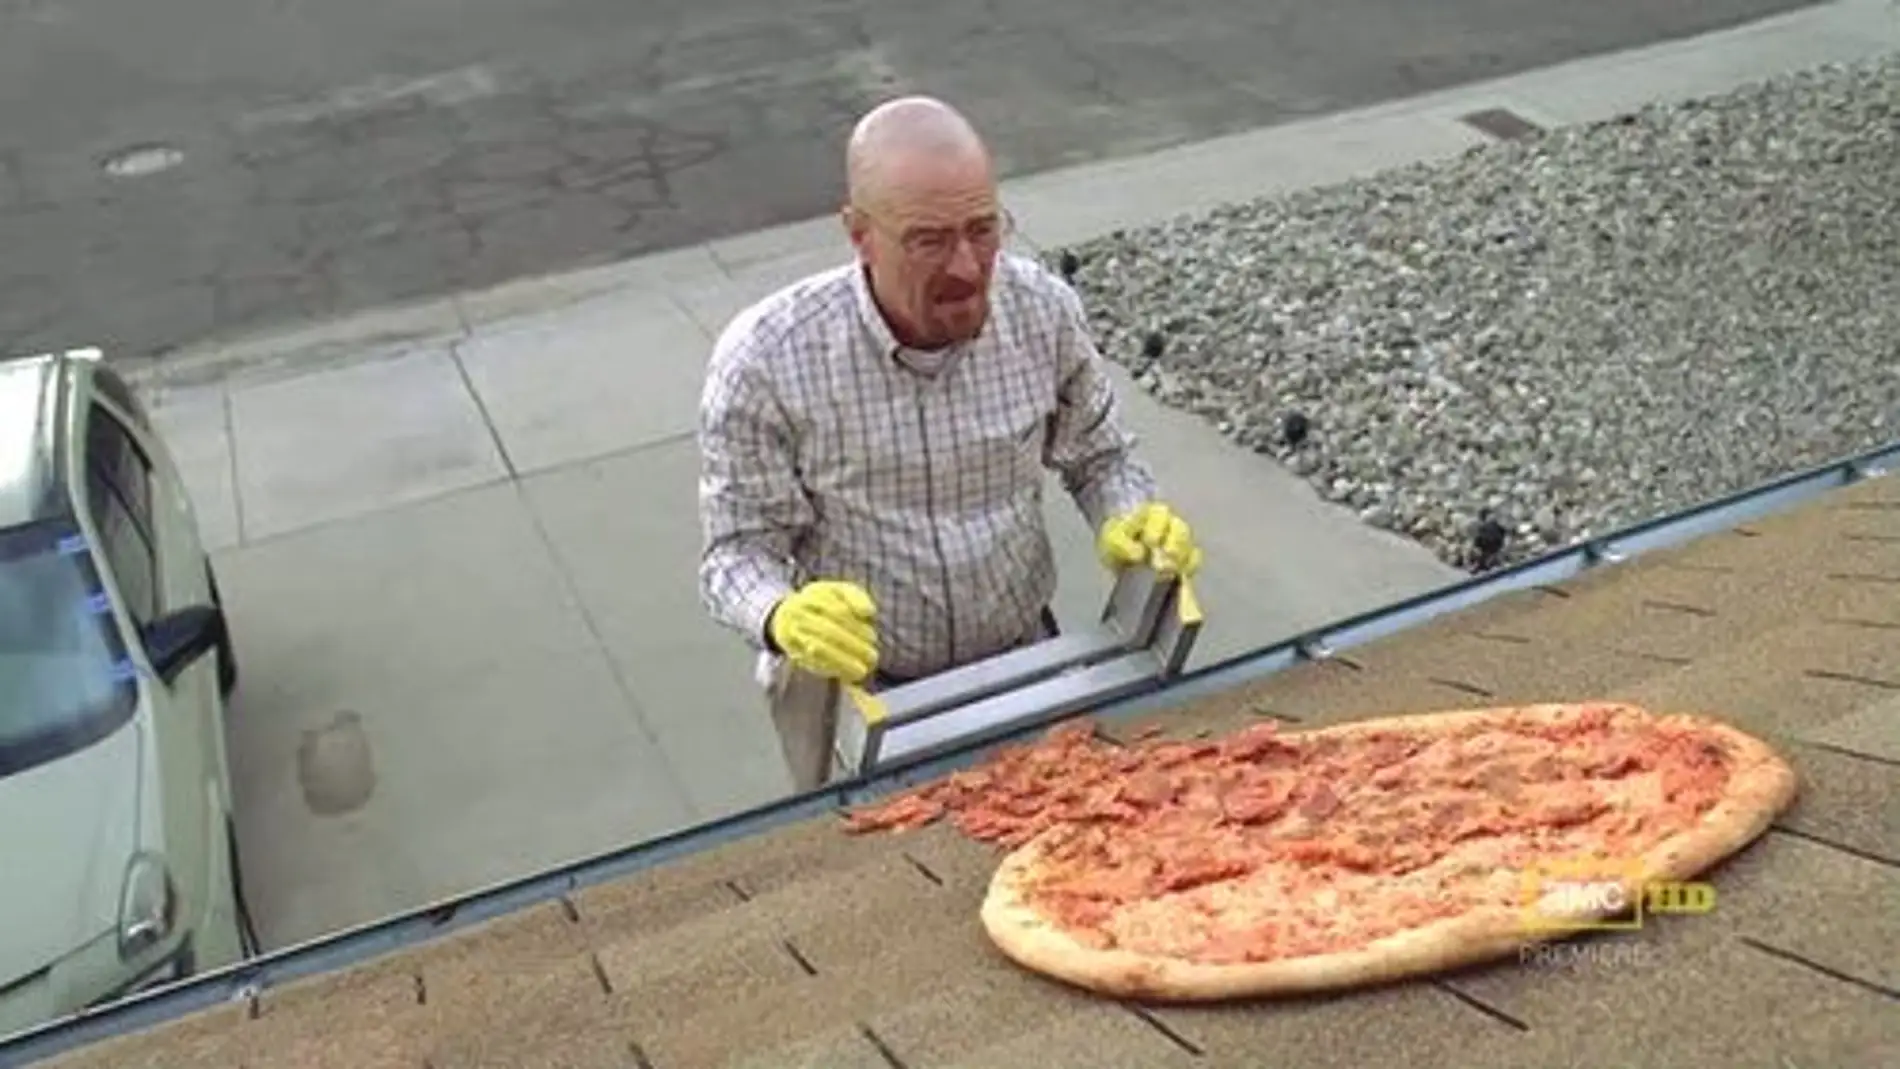 La pizza en el tejado de Walter White